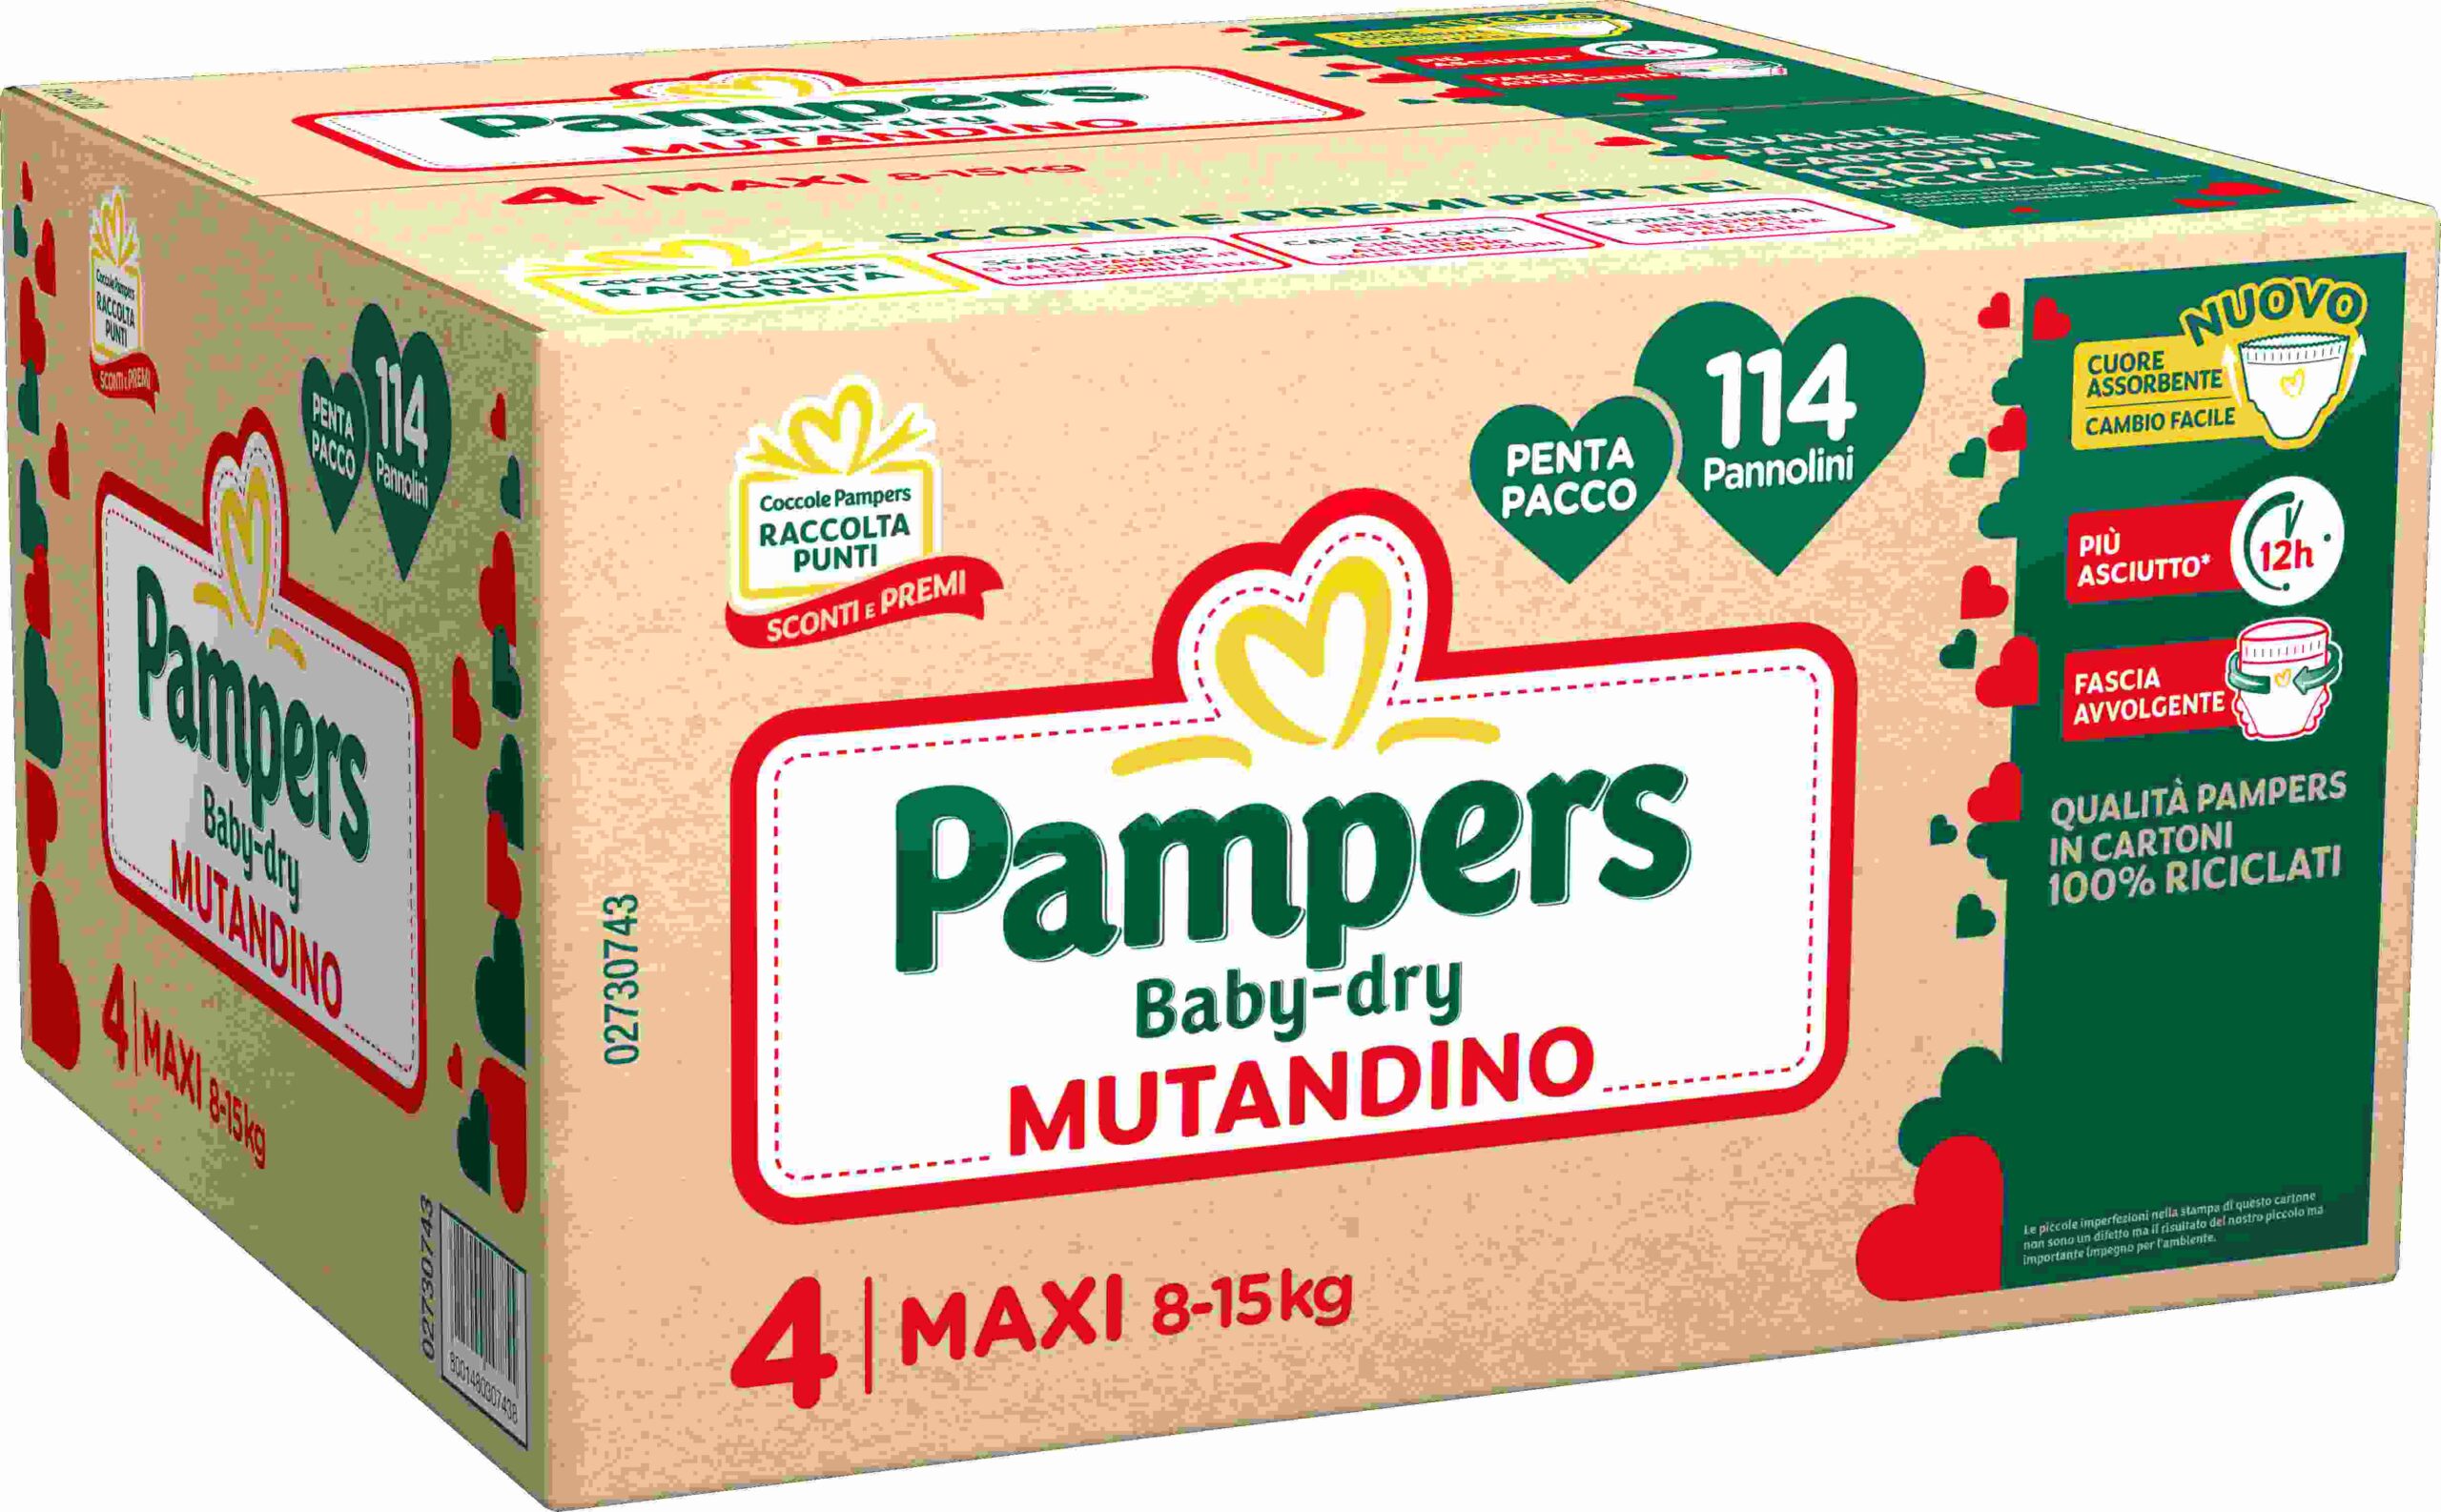 Pampers baby-dry mutandino penta maxi 114 pz